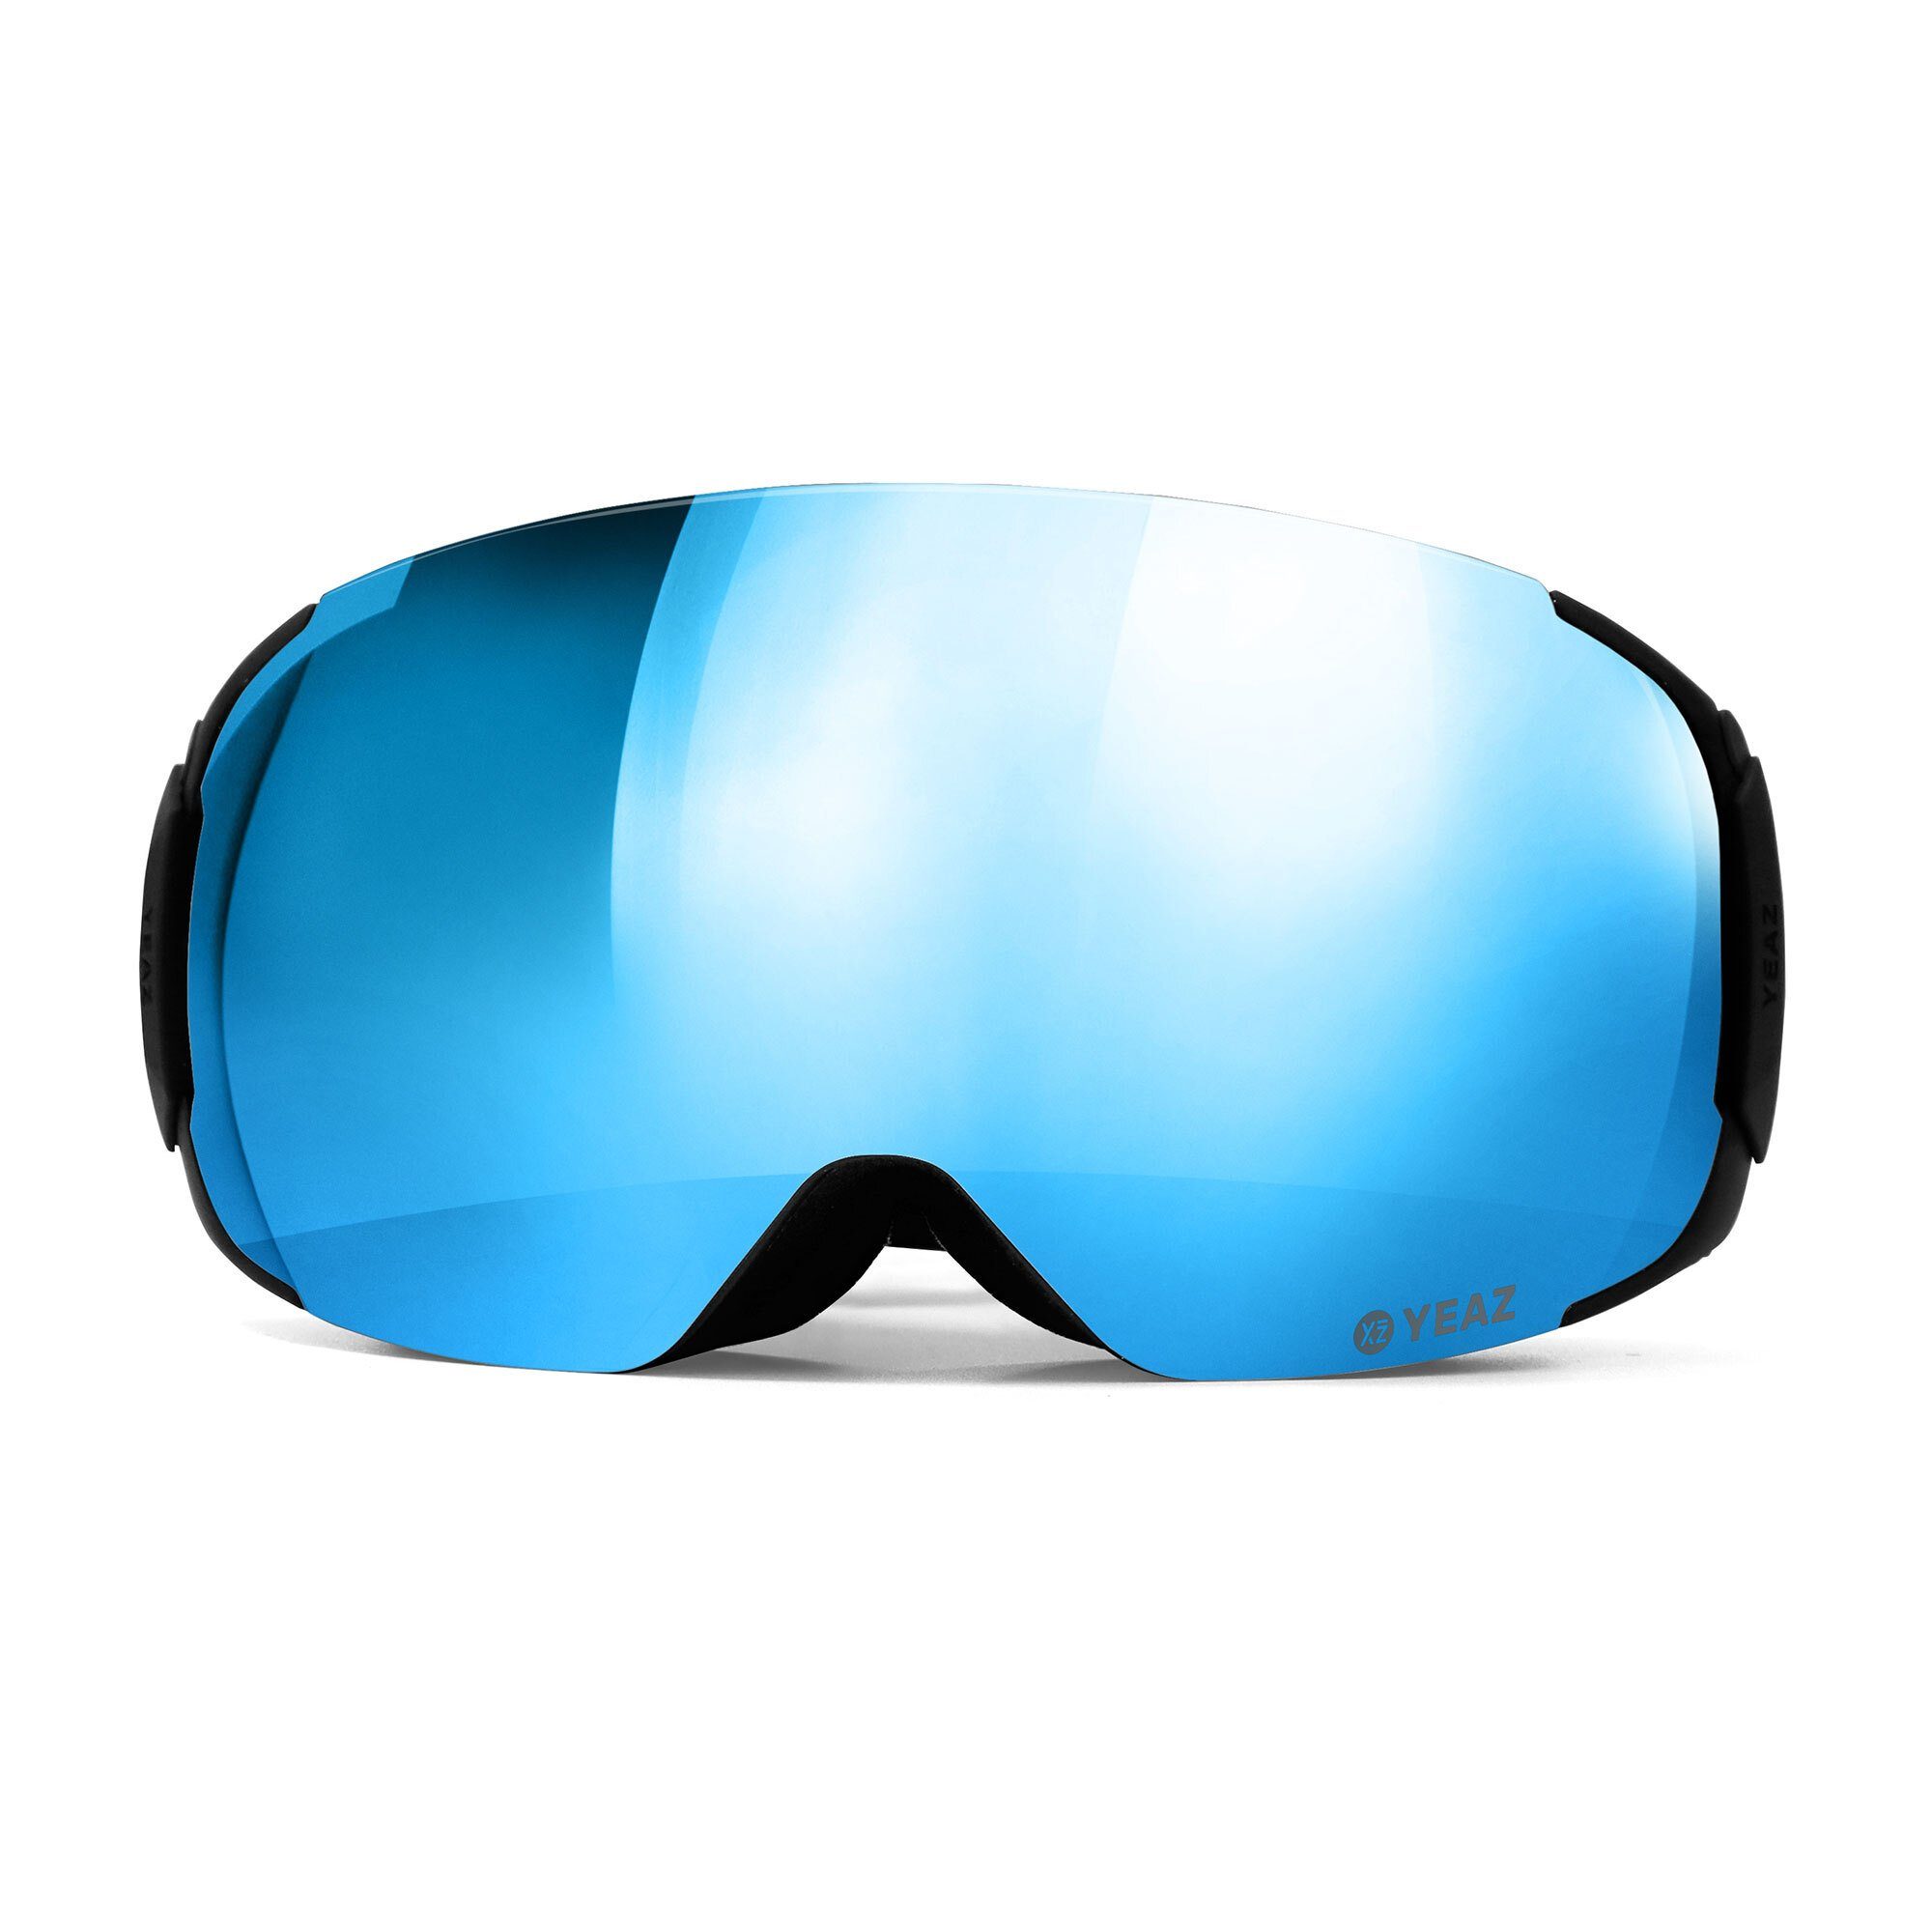 Snowboardbrille YEAZ Erwachsene Jugendliche Premium-Ski- Skibrille snowboard-brille, für und ski- und TWEAK-X und